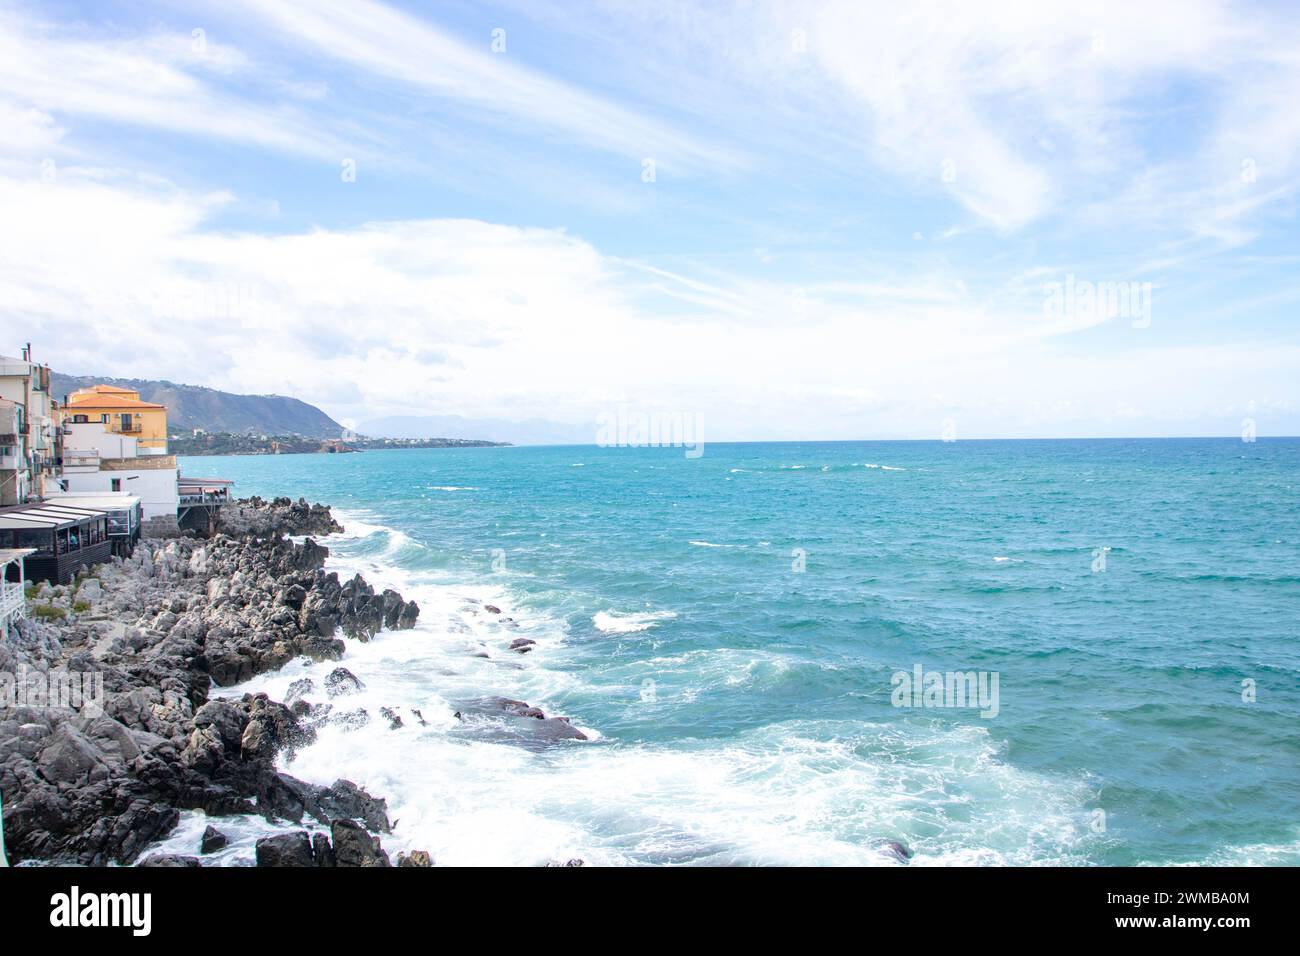 Paysage du littoral et de la ville de Cefalu, province de Palerme, Sicile, Italie Banque D'Images